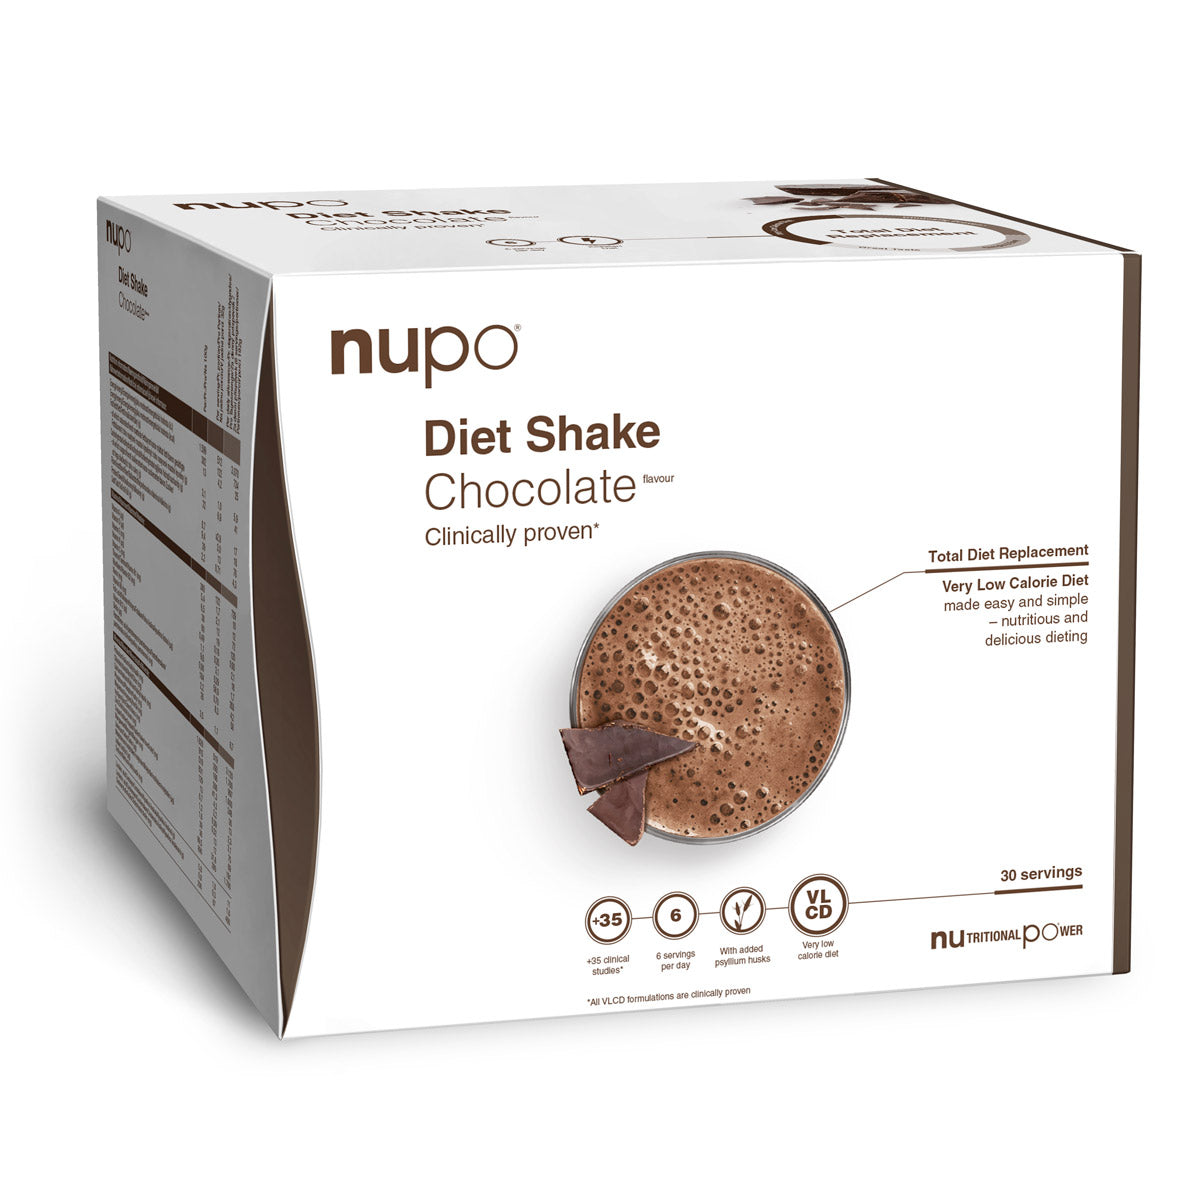 Brug Nupo Diet Shake Value Pack (960g) - Chocolate til en forbedret oplevelse